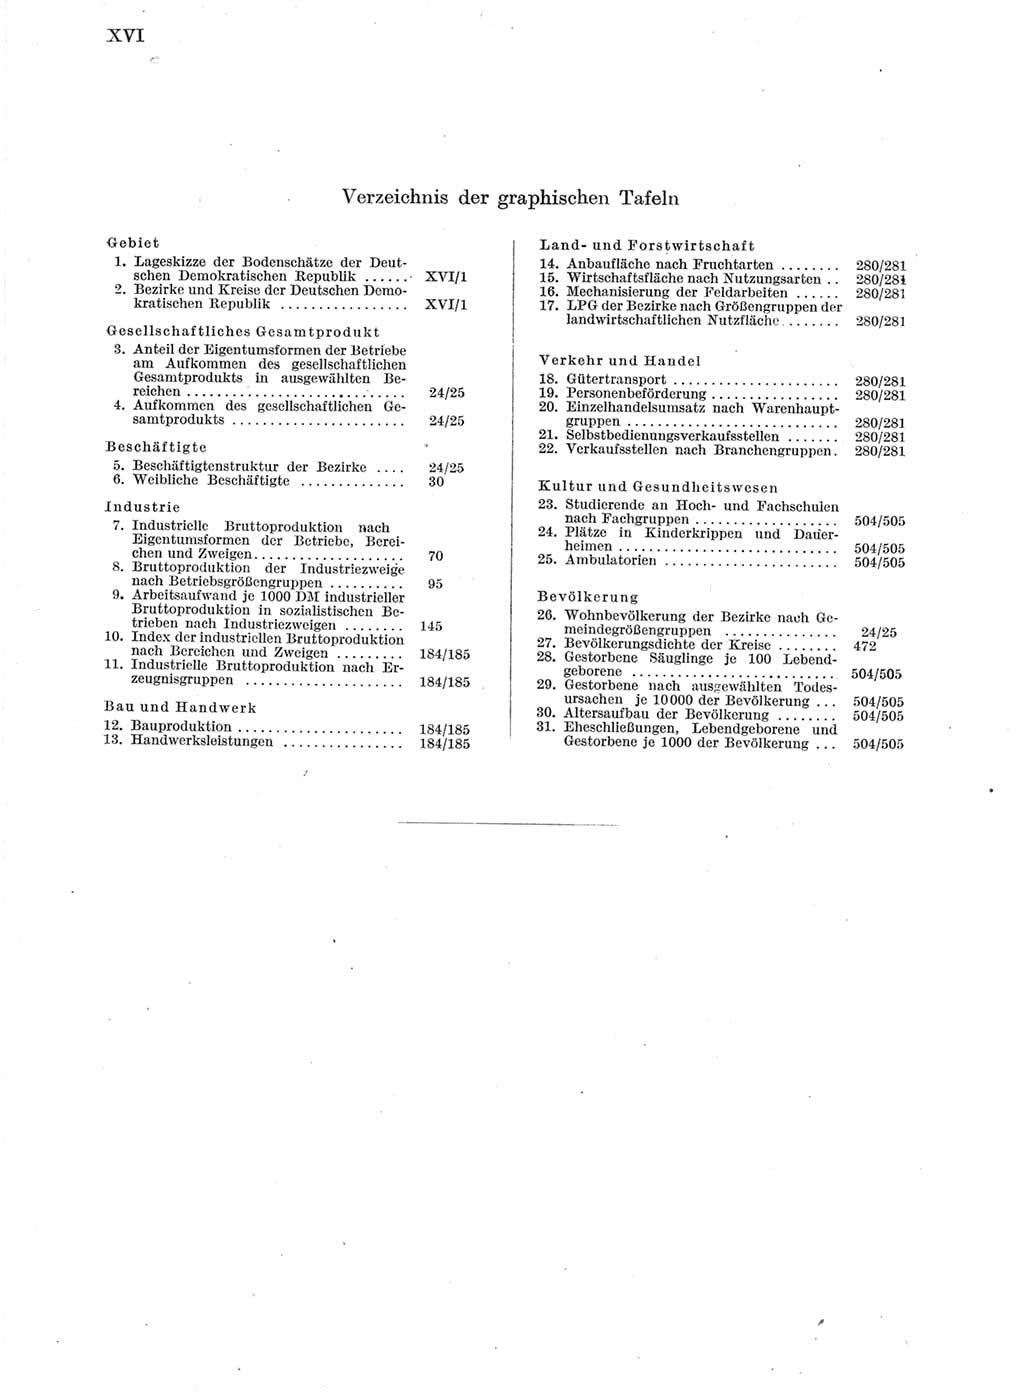 Statistisches Jahrbuch der Deutschen Demokratischen Republik (DDR) 1963, Seite 16 (Stat. Jb. DDR 1963, S. 16)